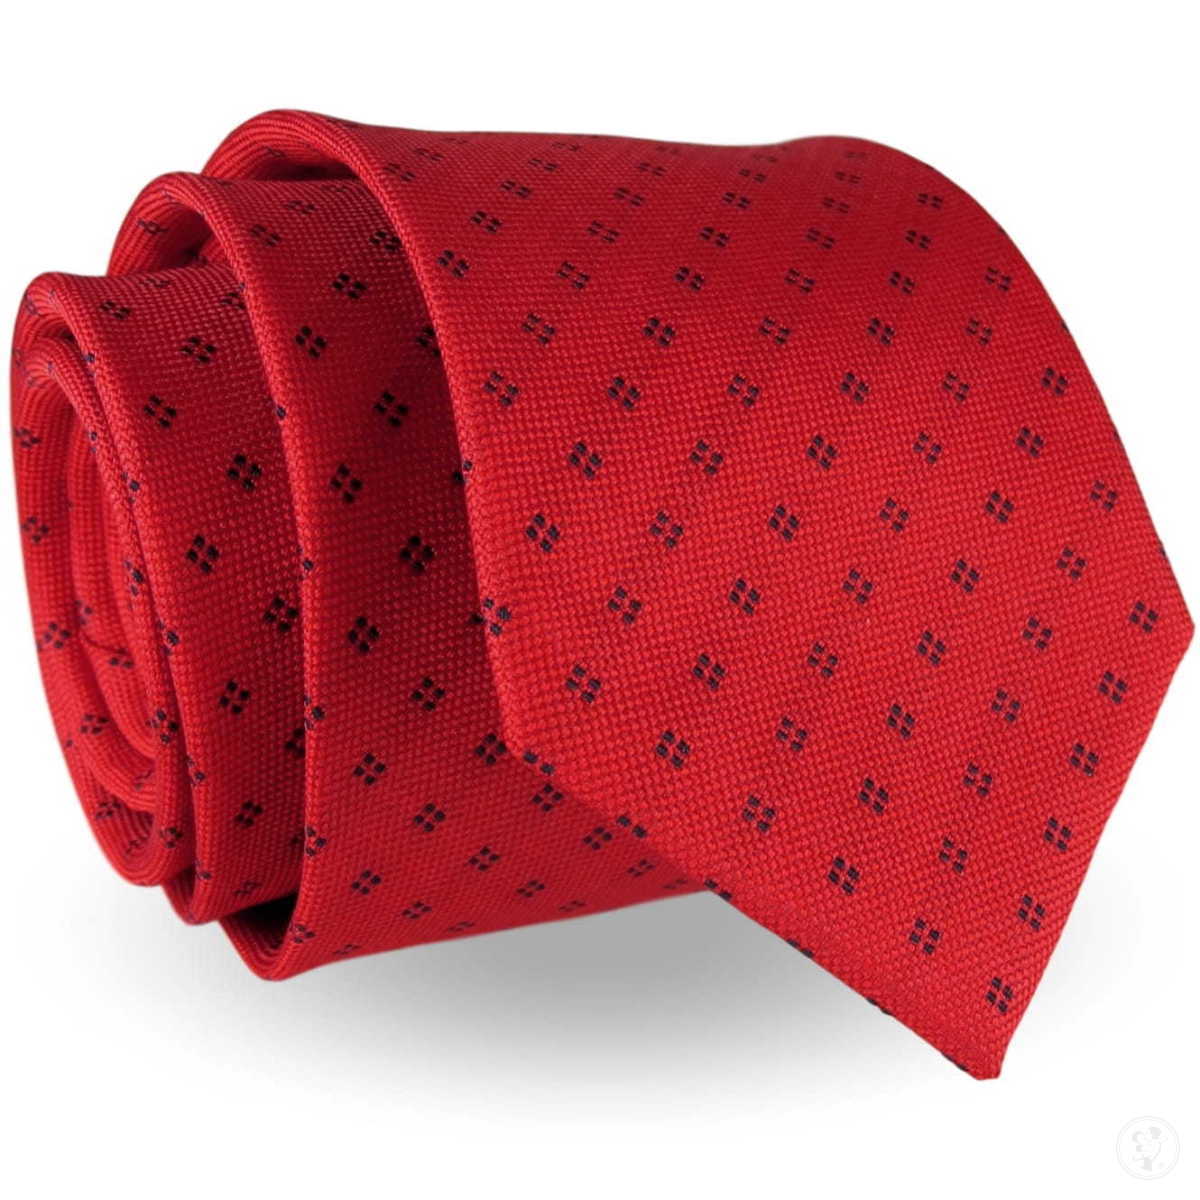 Krawat Męski Elegancki Modny klasyczny szeroki czerwony we wzory G239 - zdjęcie 1